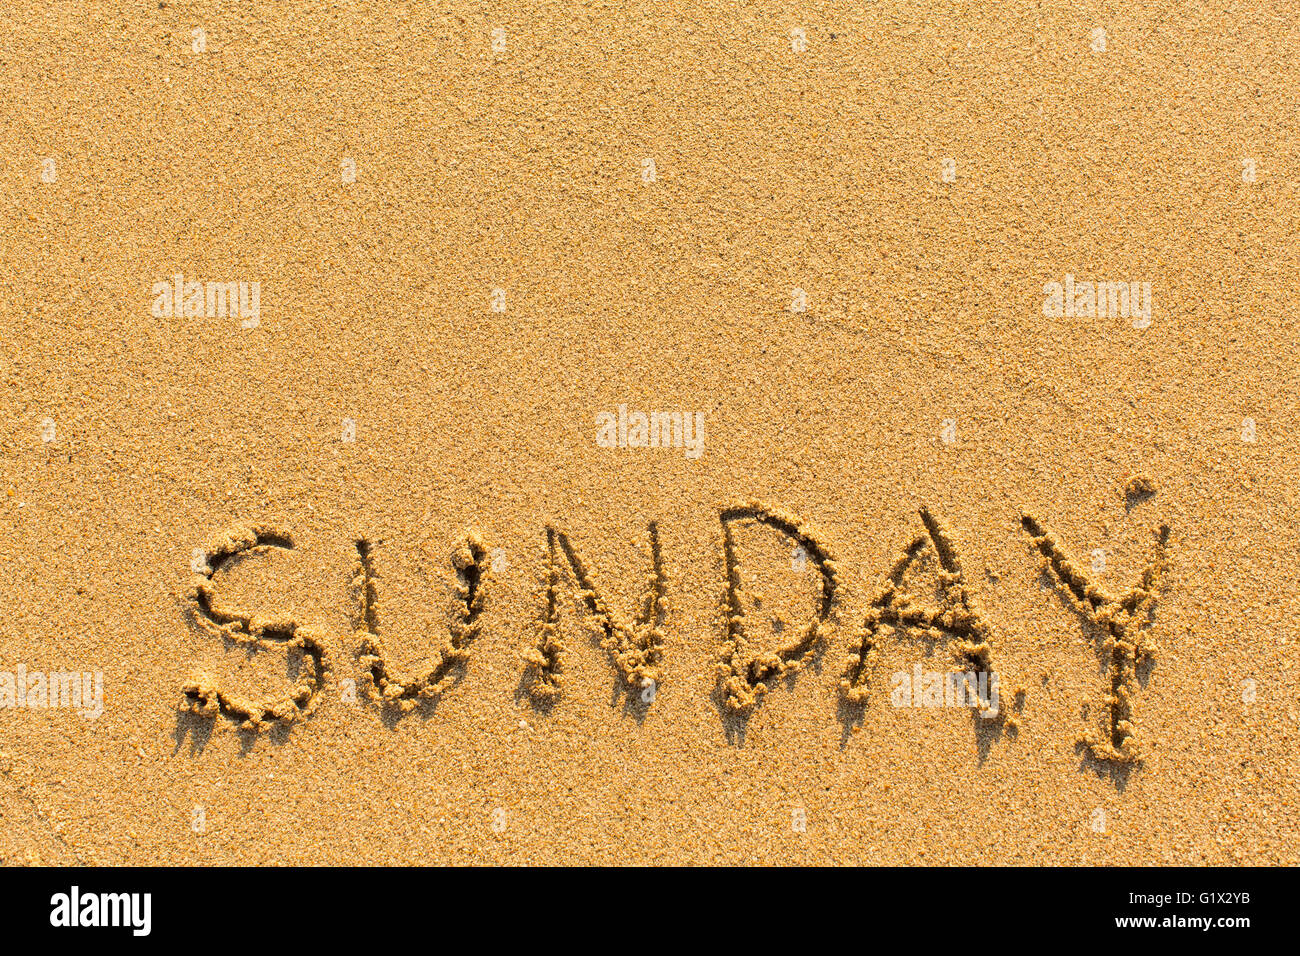 Sonntag - Inschrift von Hand auf einen Licht-goldenen Sandstrand. Stockfoto